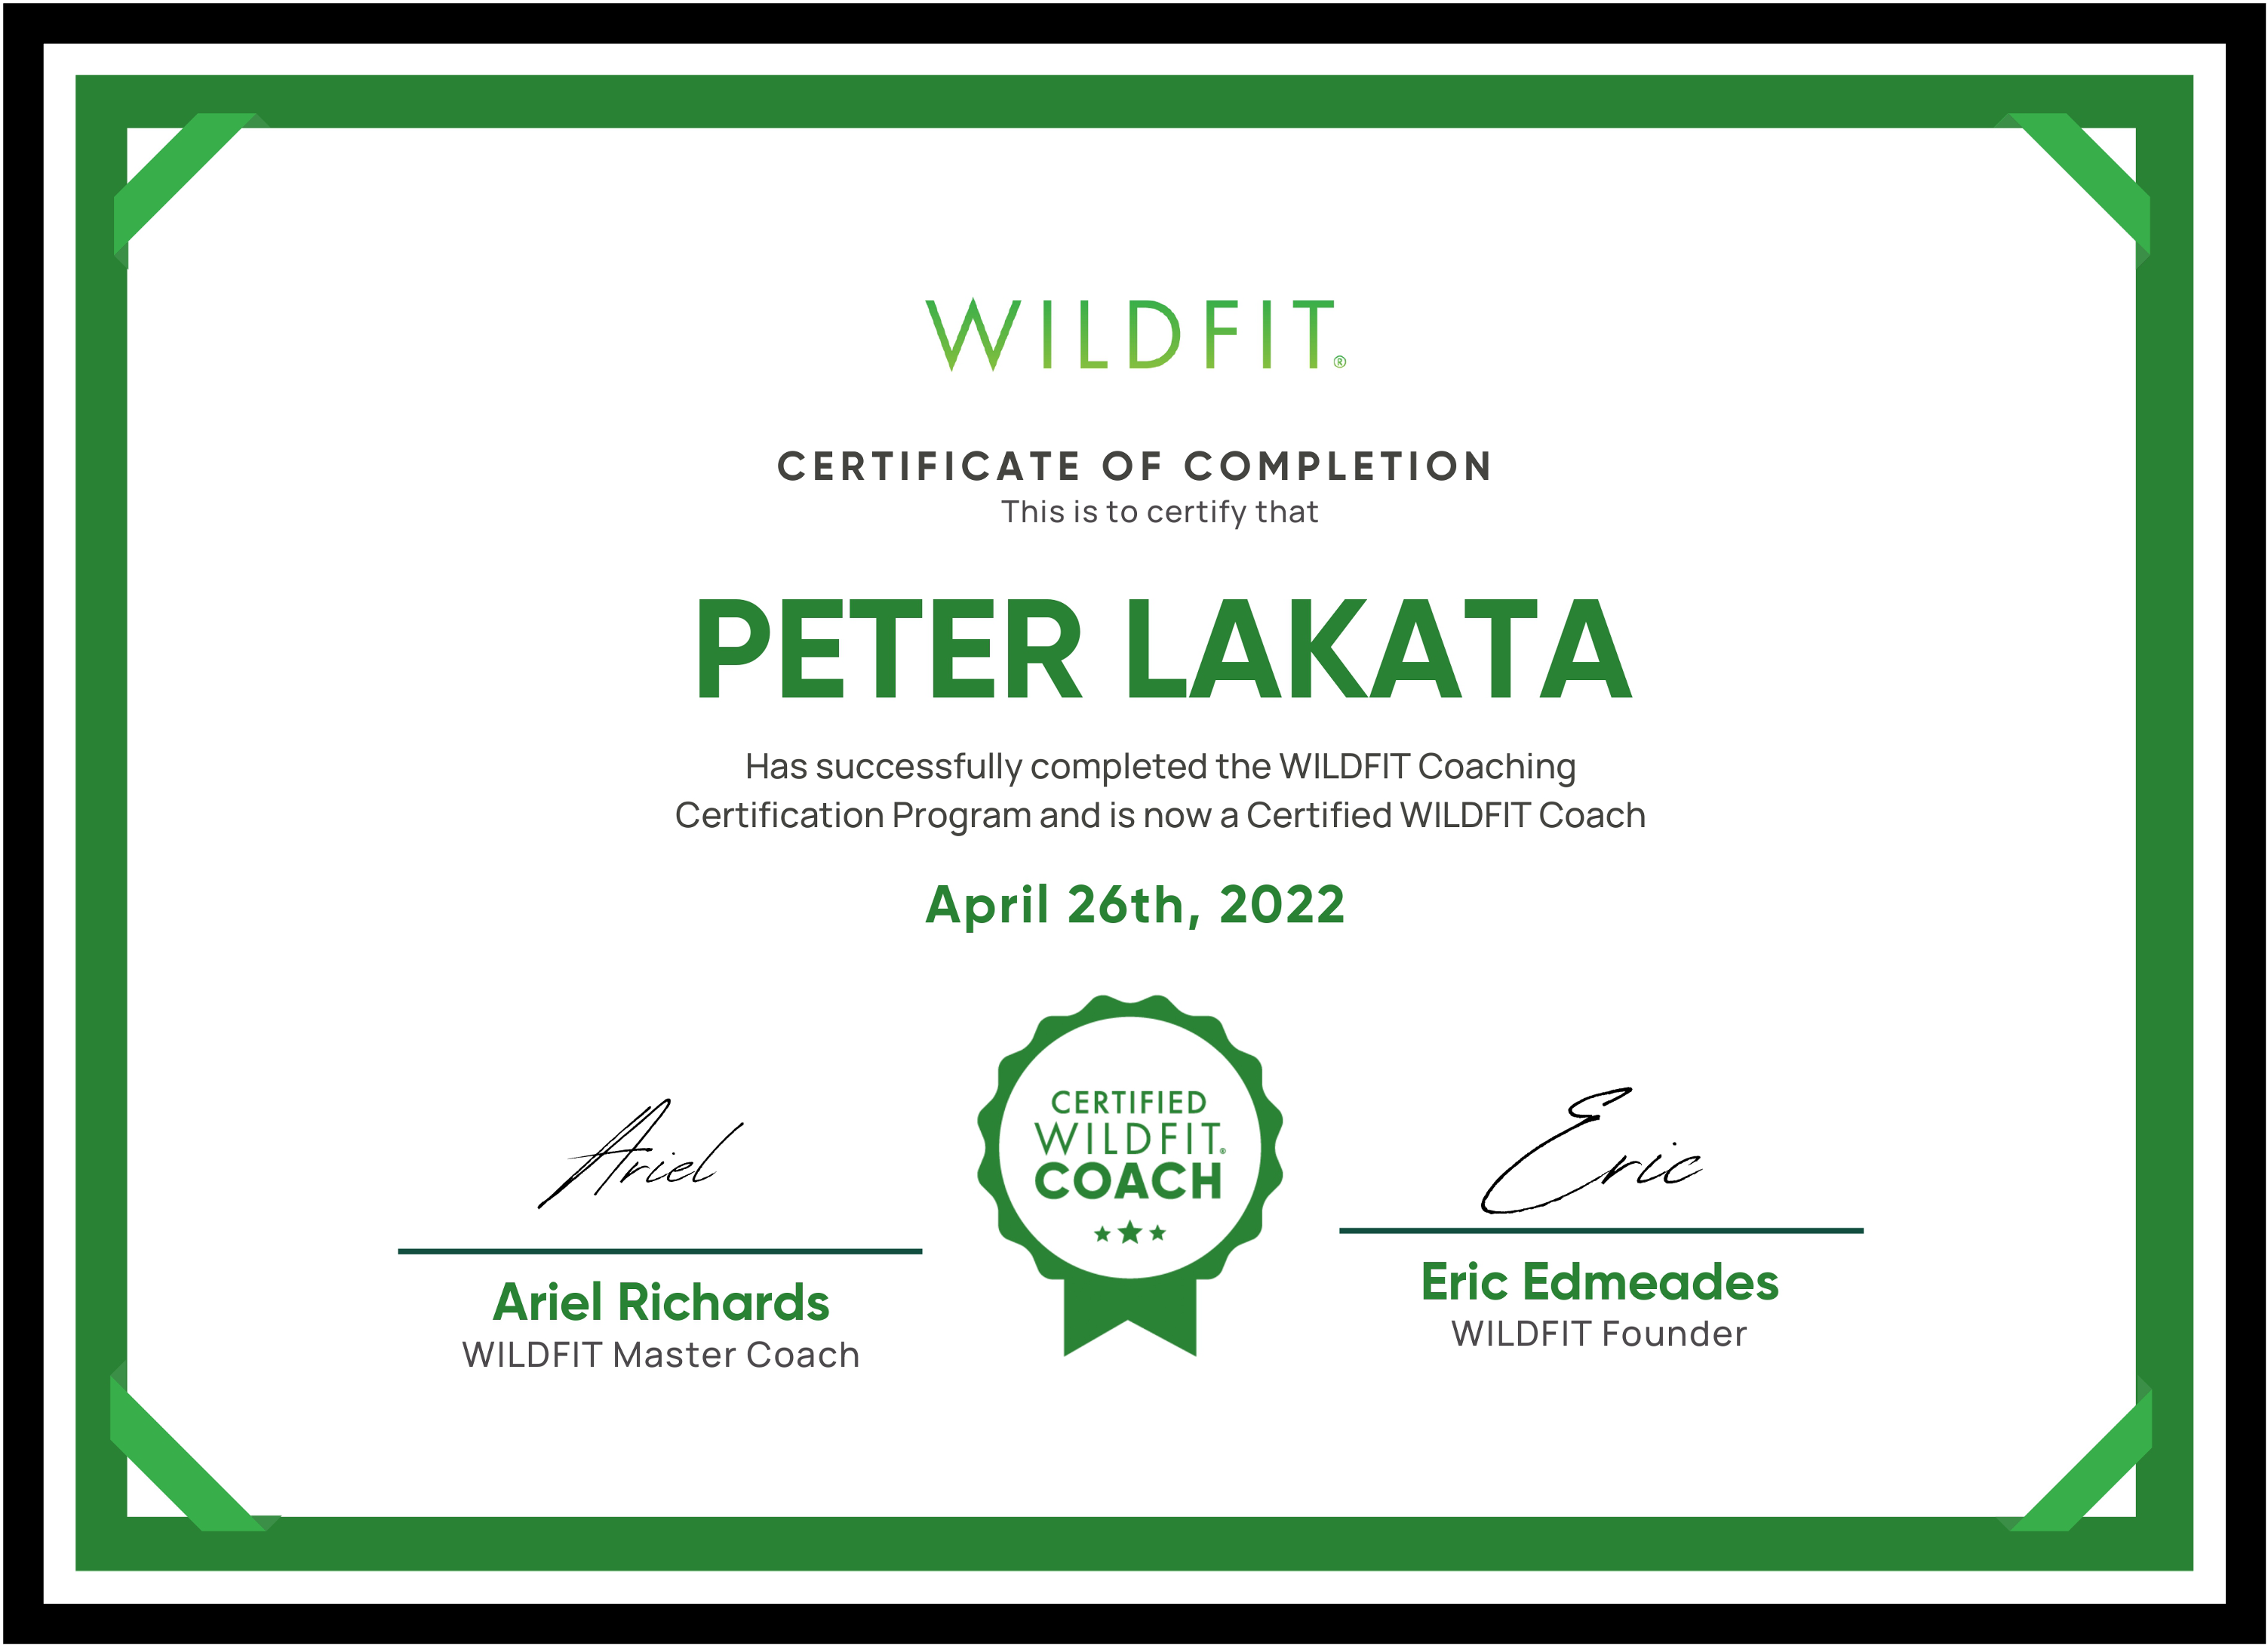 WILDFIT certificate for Peter Lakata